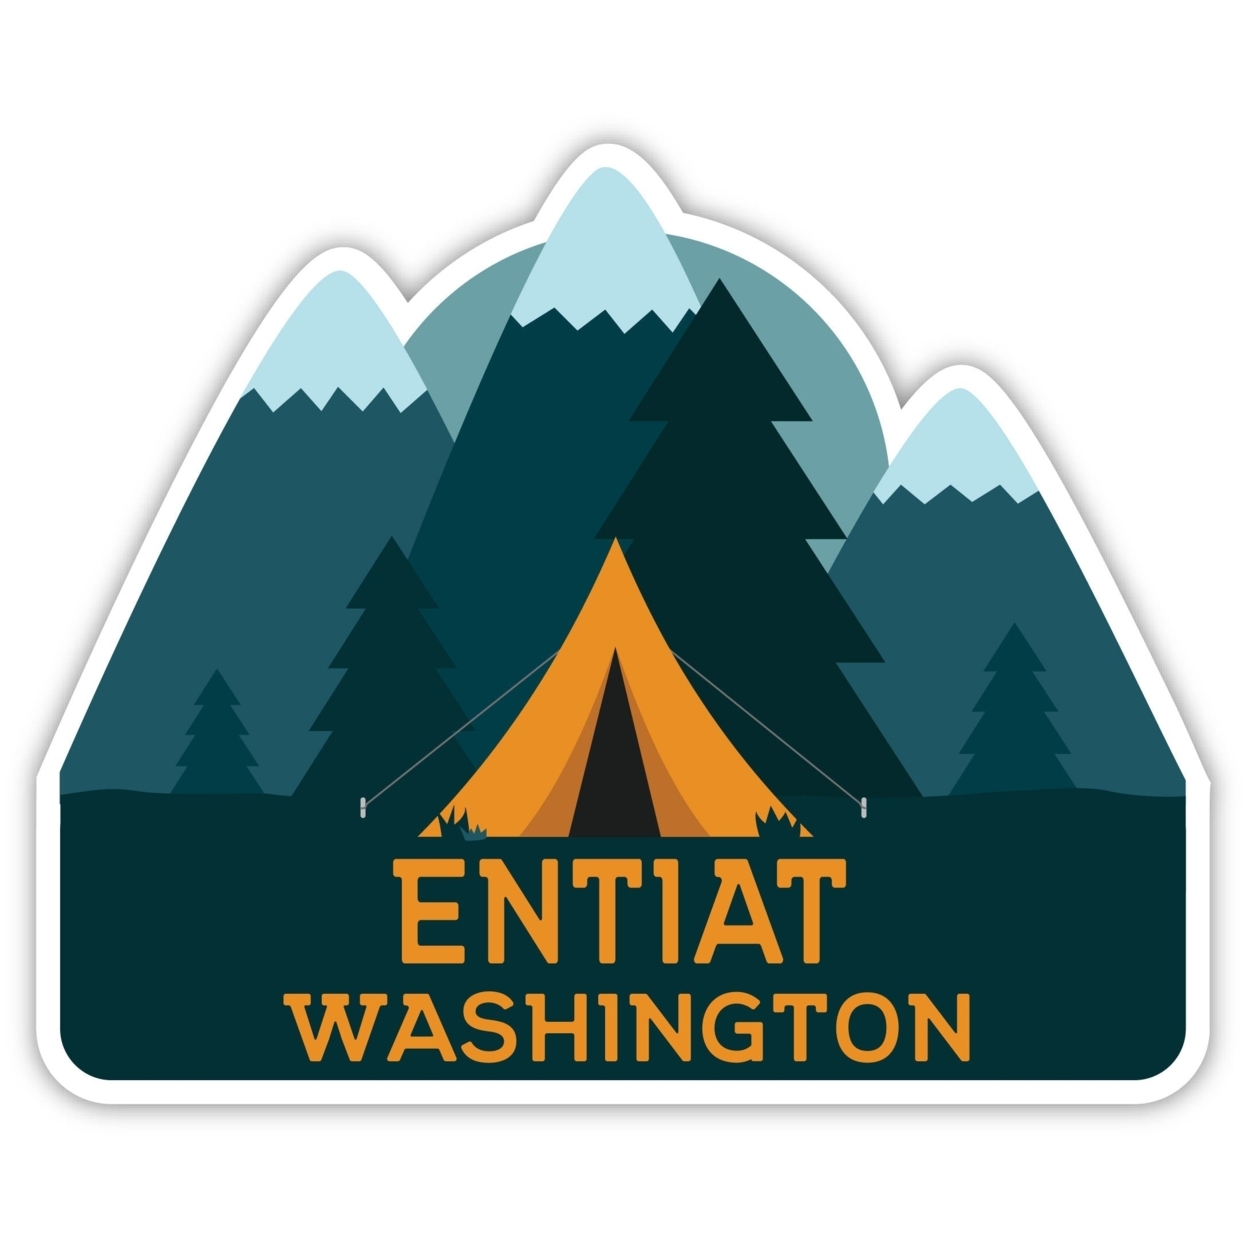 Entiat Washington Souvenir Decorative Stickers (Choose Theme And Size) - Single Unit, 4-Inch, Tent